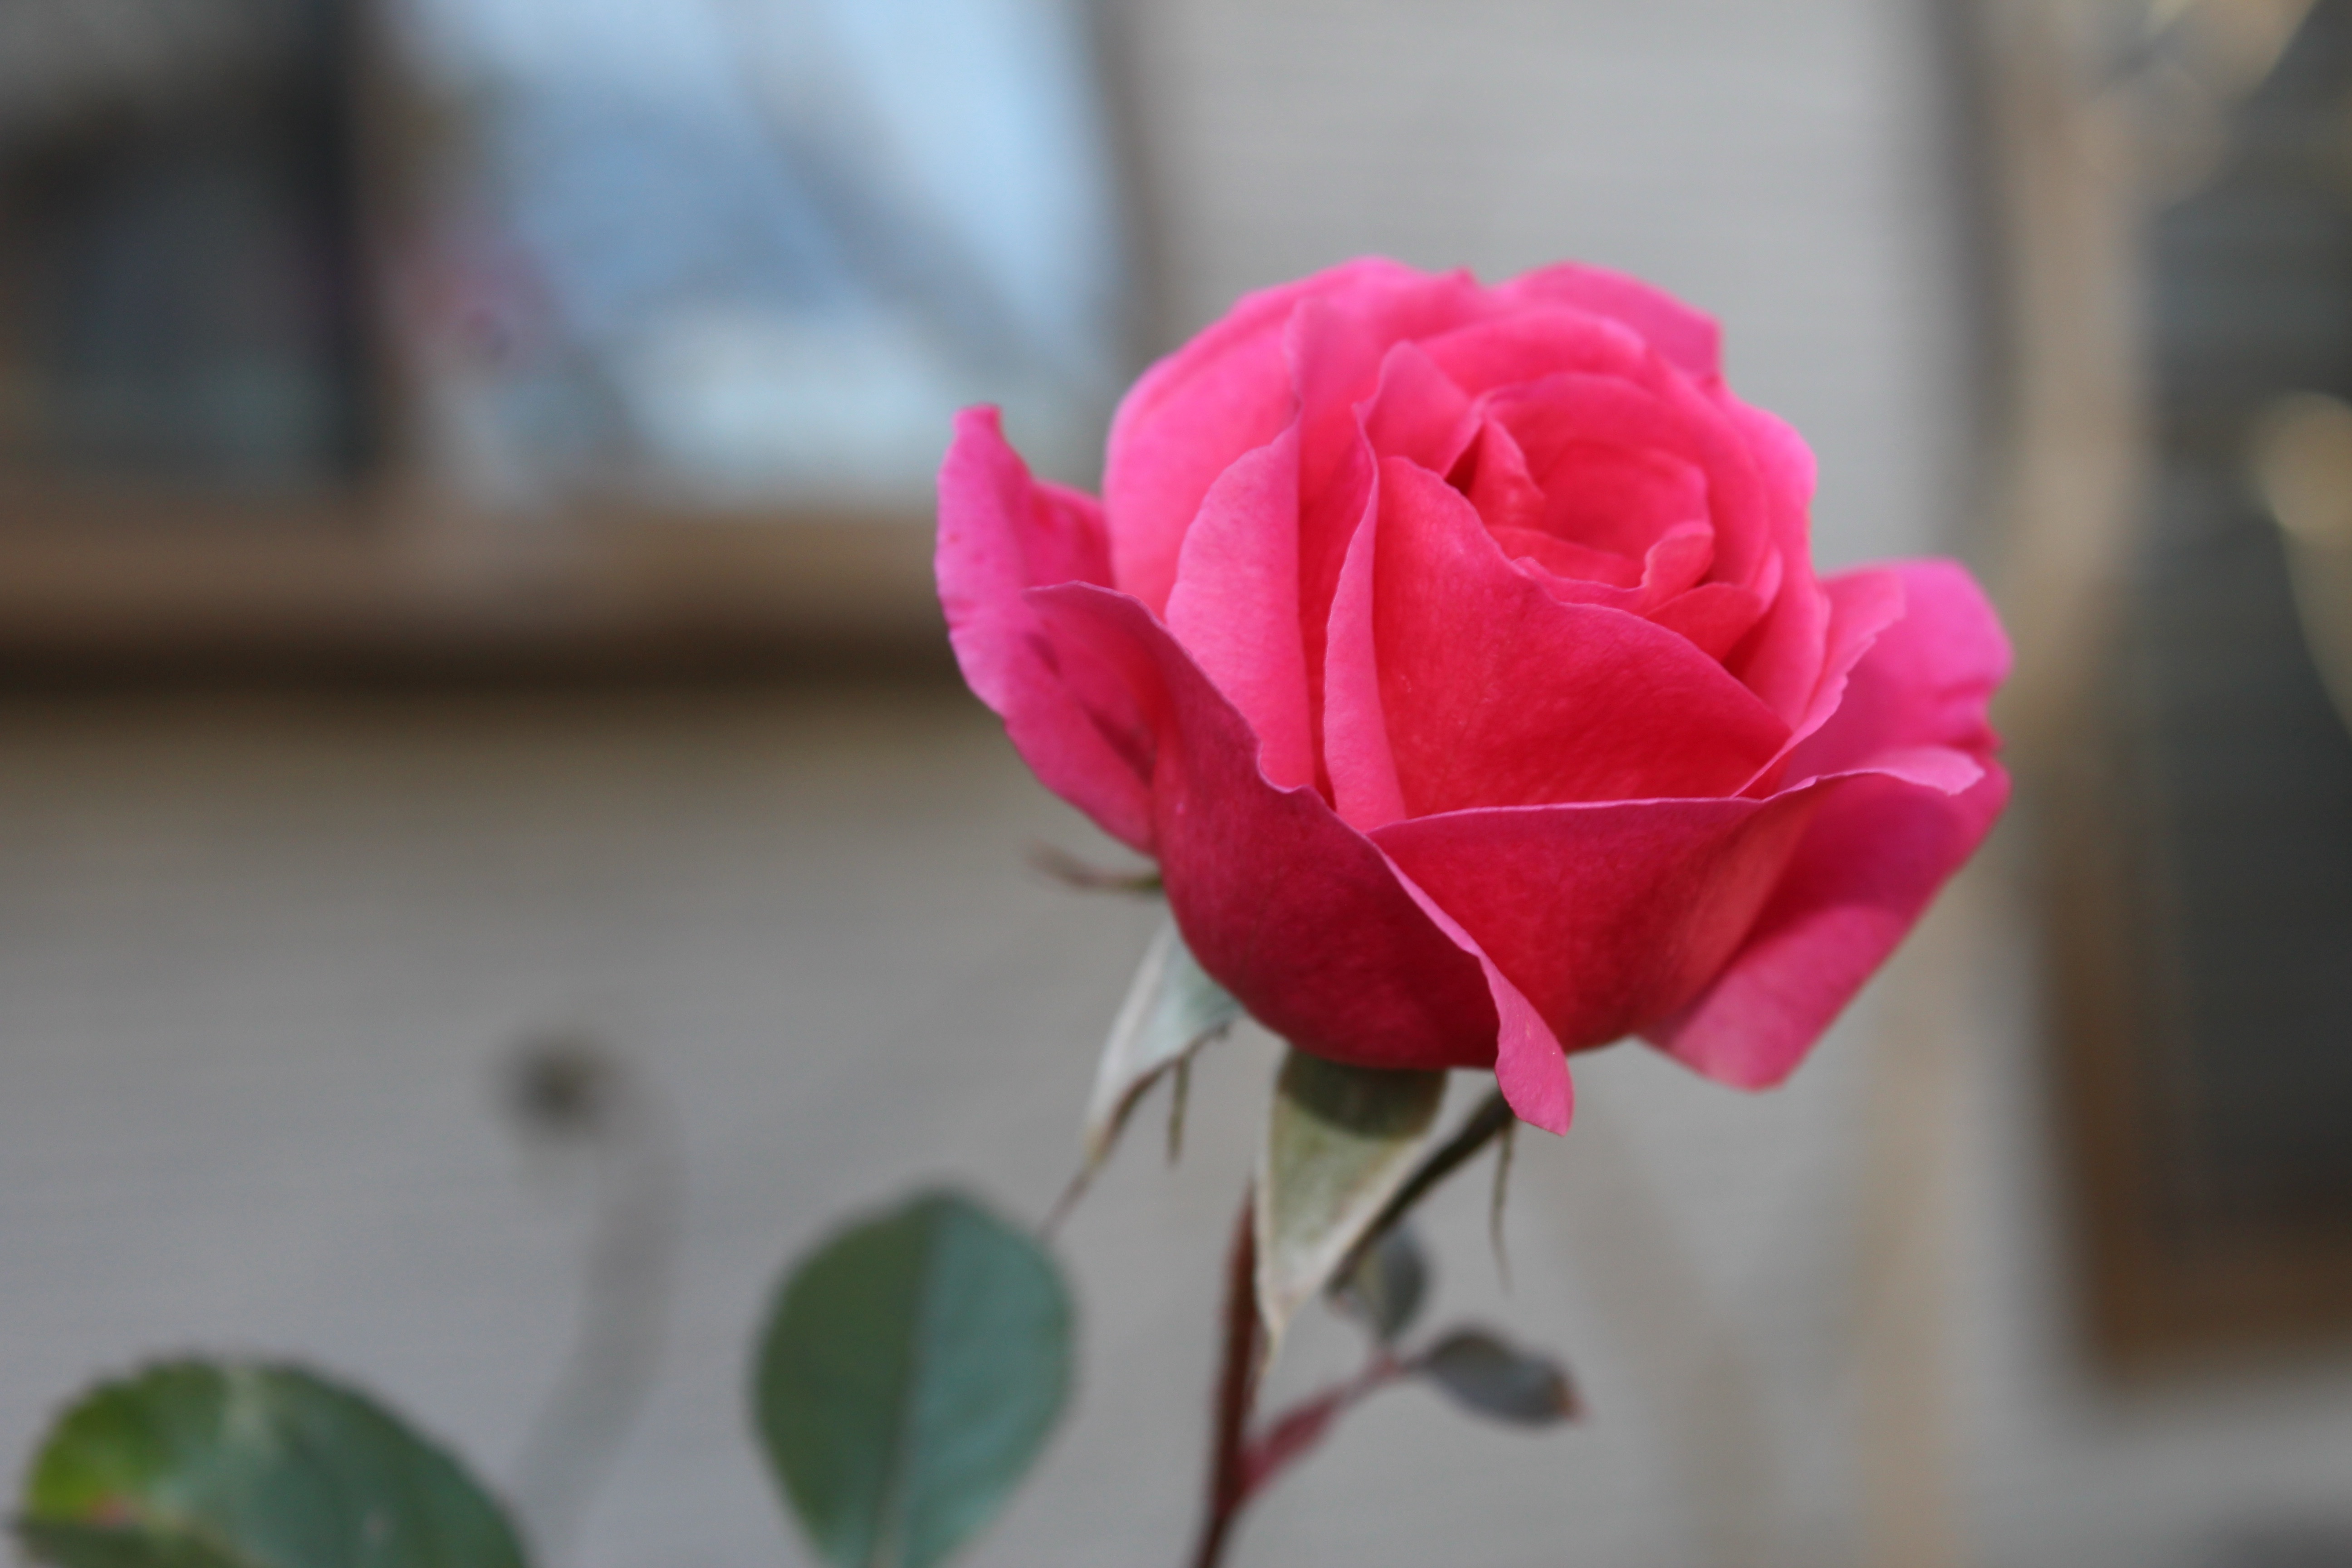 今日の誕生花の薔薇は、数十年ぶりの寒波も雪も経験してなお、美しく咲いているジェネラシオン・ジャルダンです。